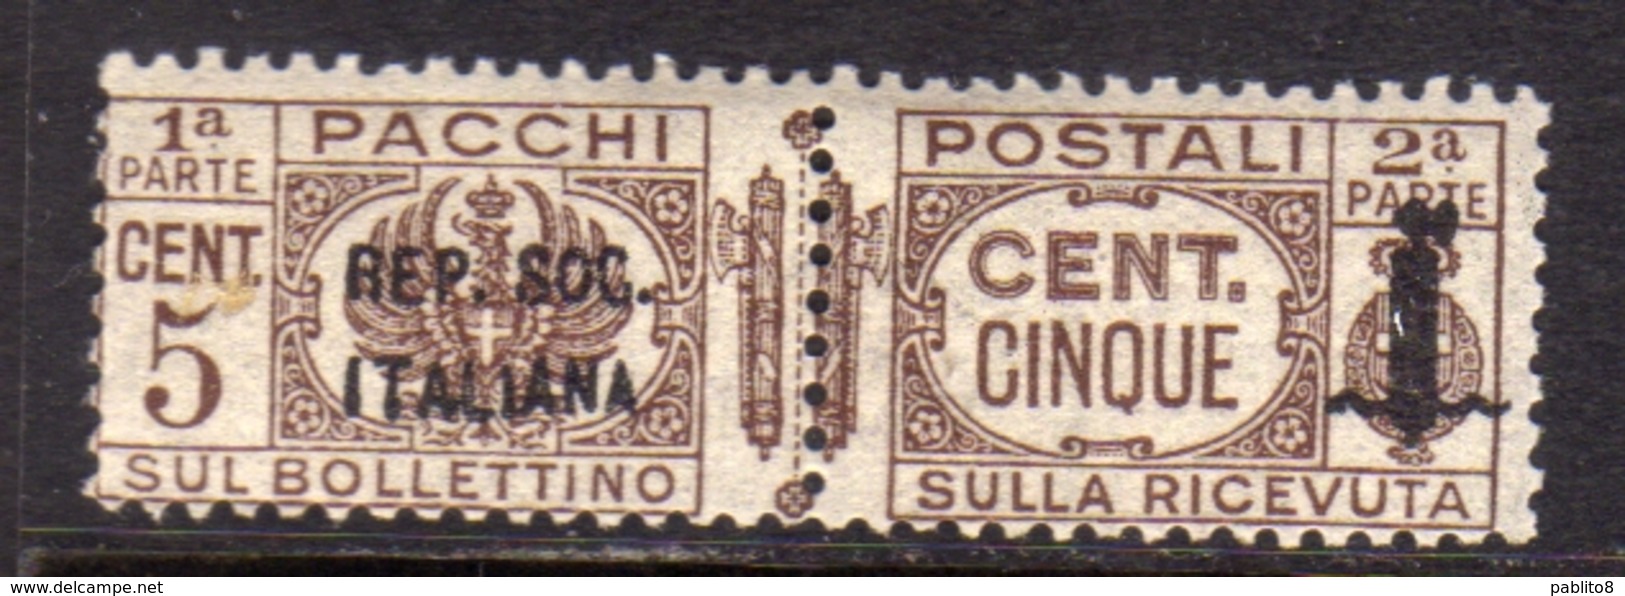 ITALIA REGNO ITALY KINGDOM 1944 RSI REPUBBLICA SOCIALE ITALIANA PACCHI POSTALI PARCEL POST FASCIO CENT. 5c MNH - Pacchi Postali